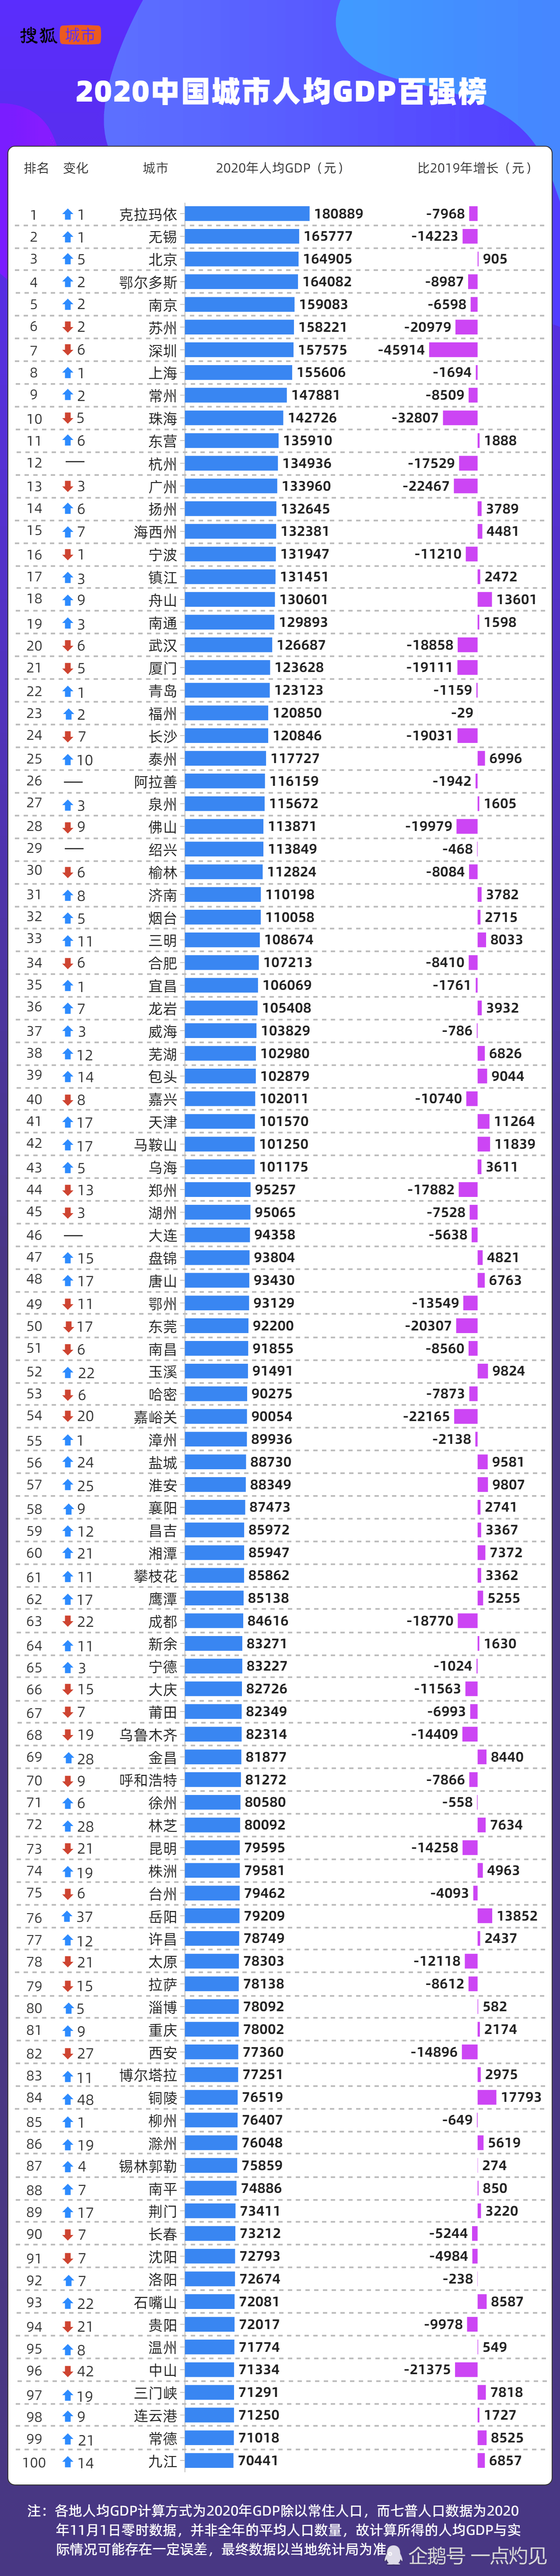 中国gdp人均与_2020中国人均GDP百强:深圳和上海未进前5,成都、重庆排60名之后